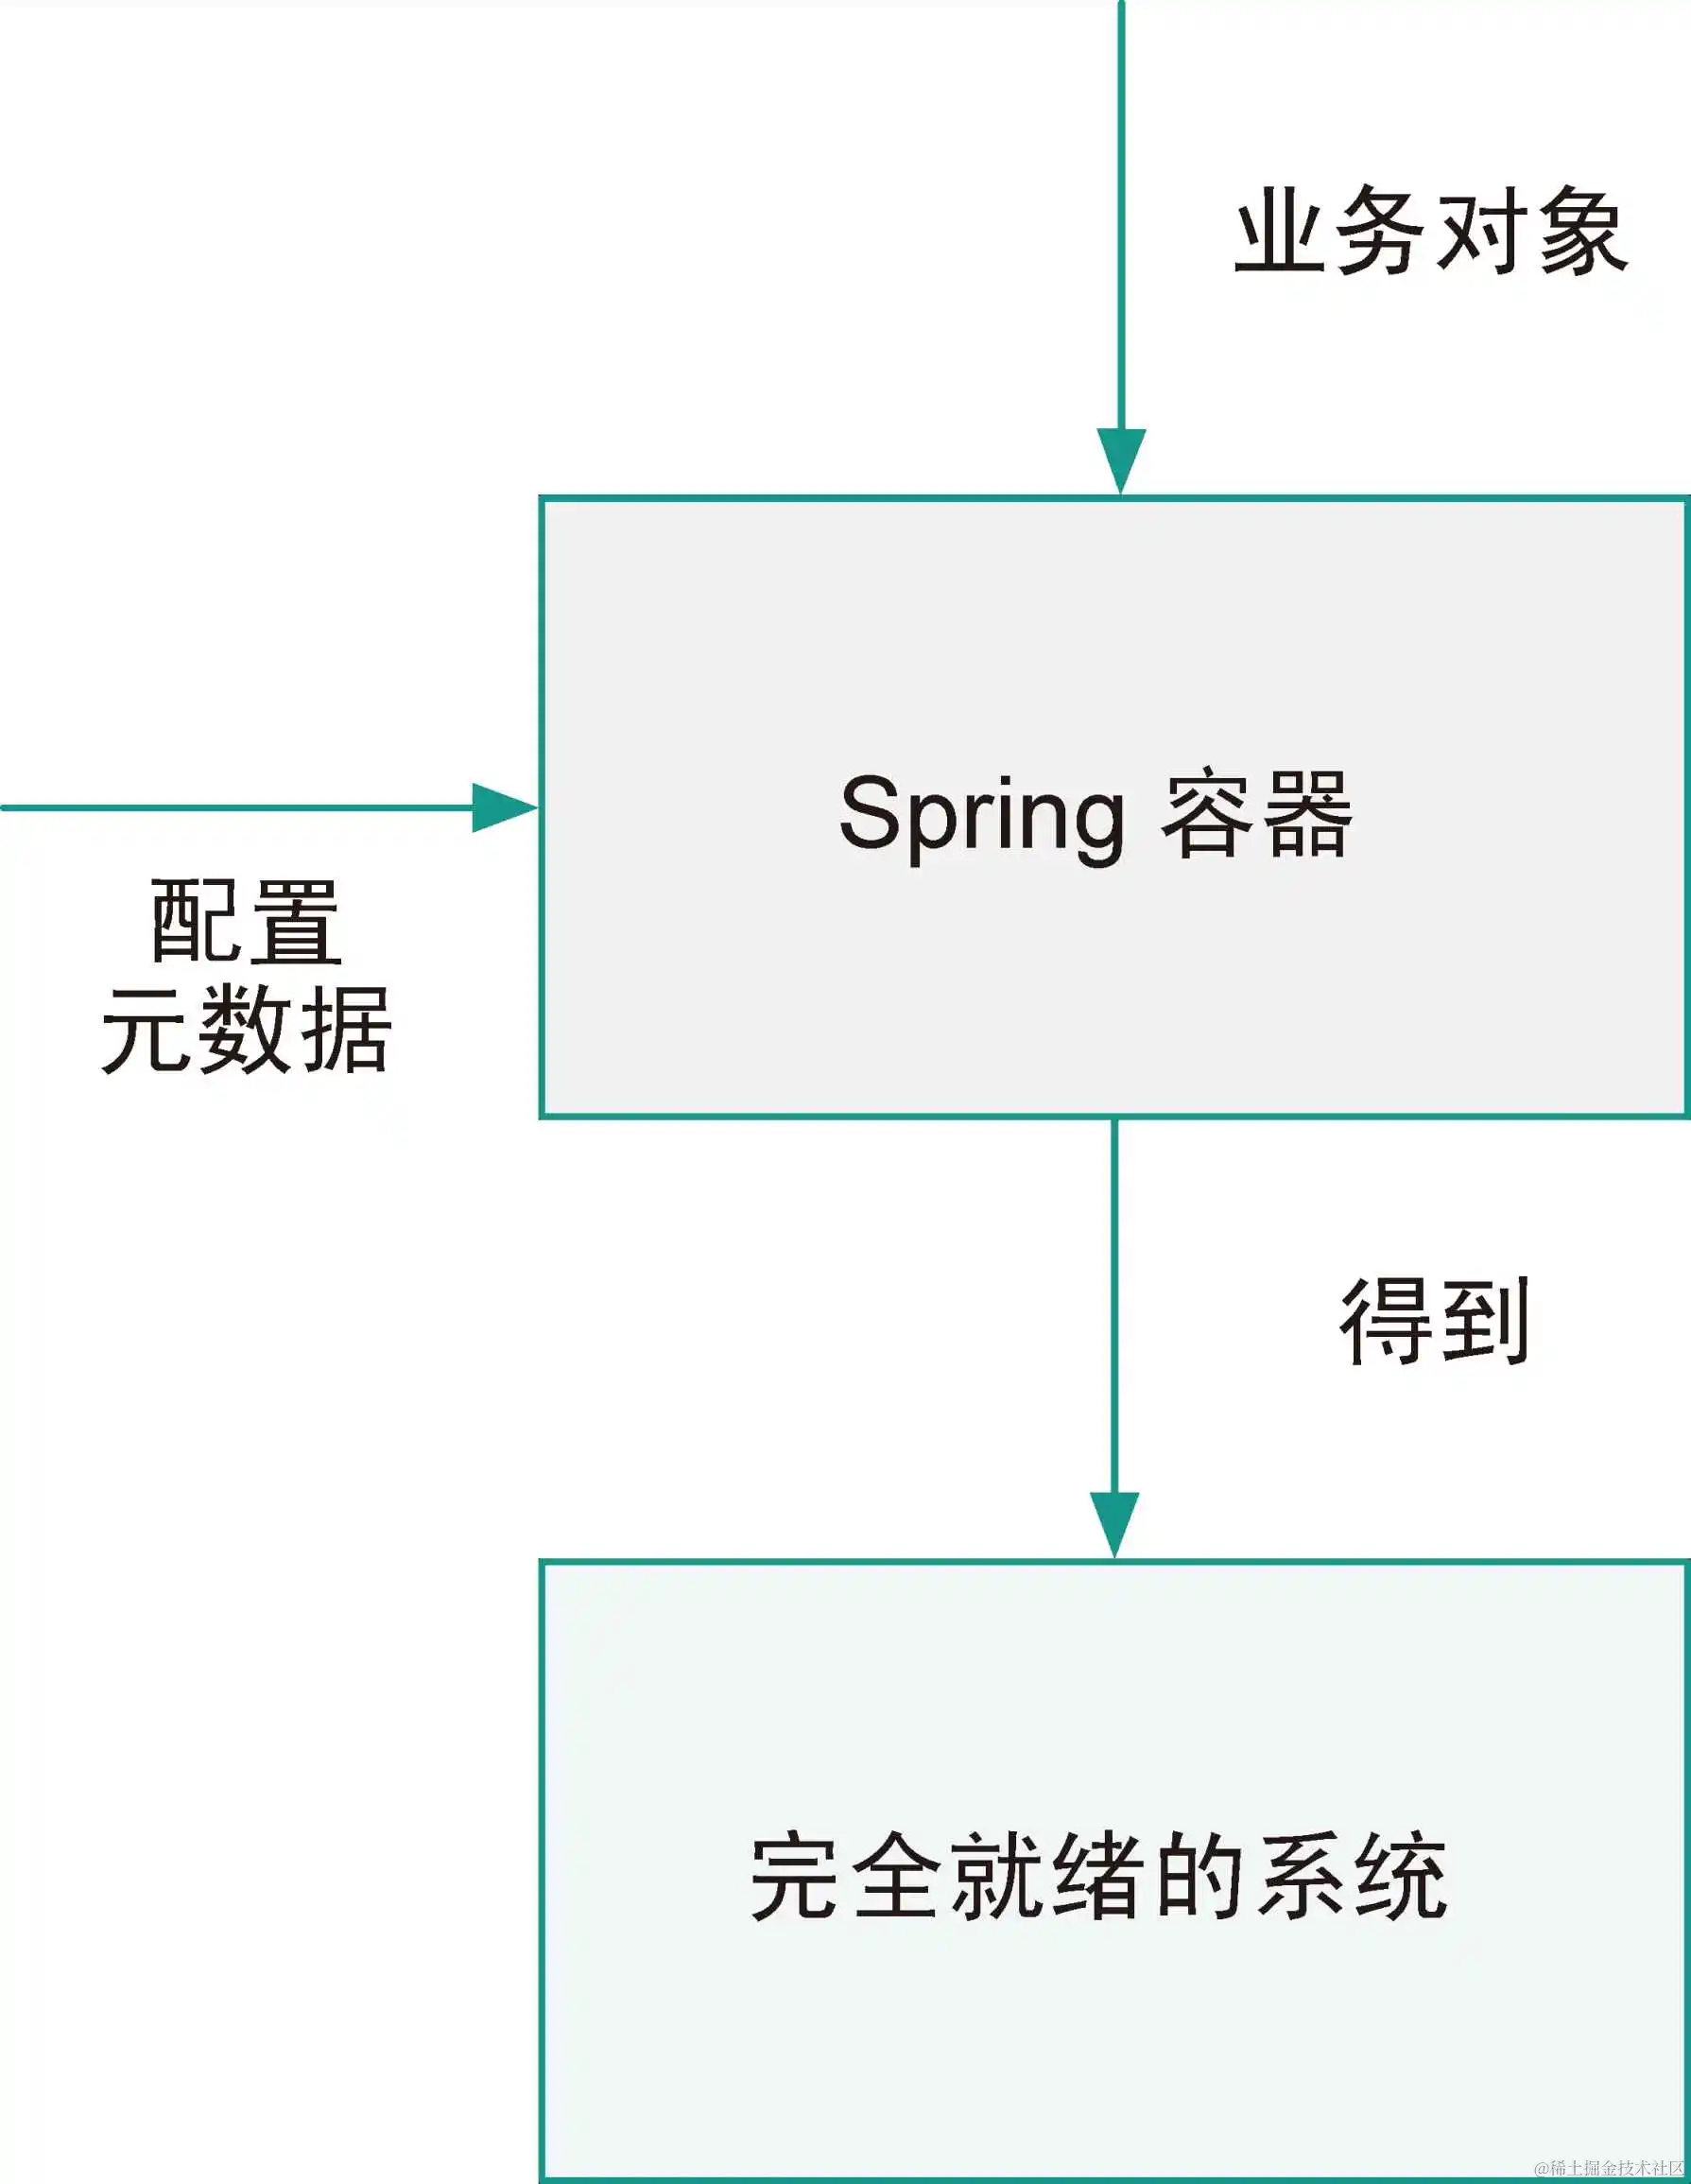 第 2 章：Spring Framework 中的 IoC 容器